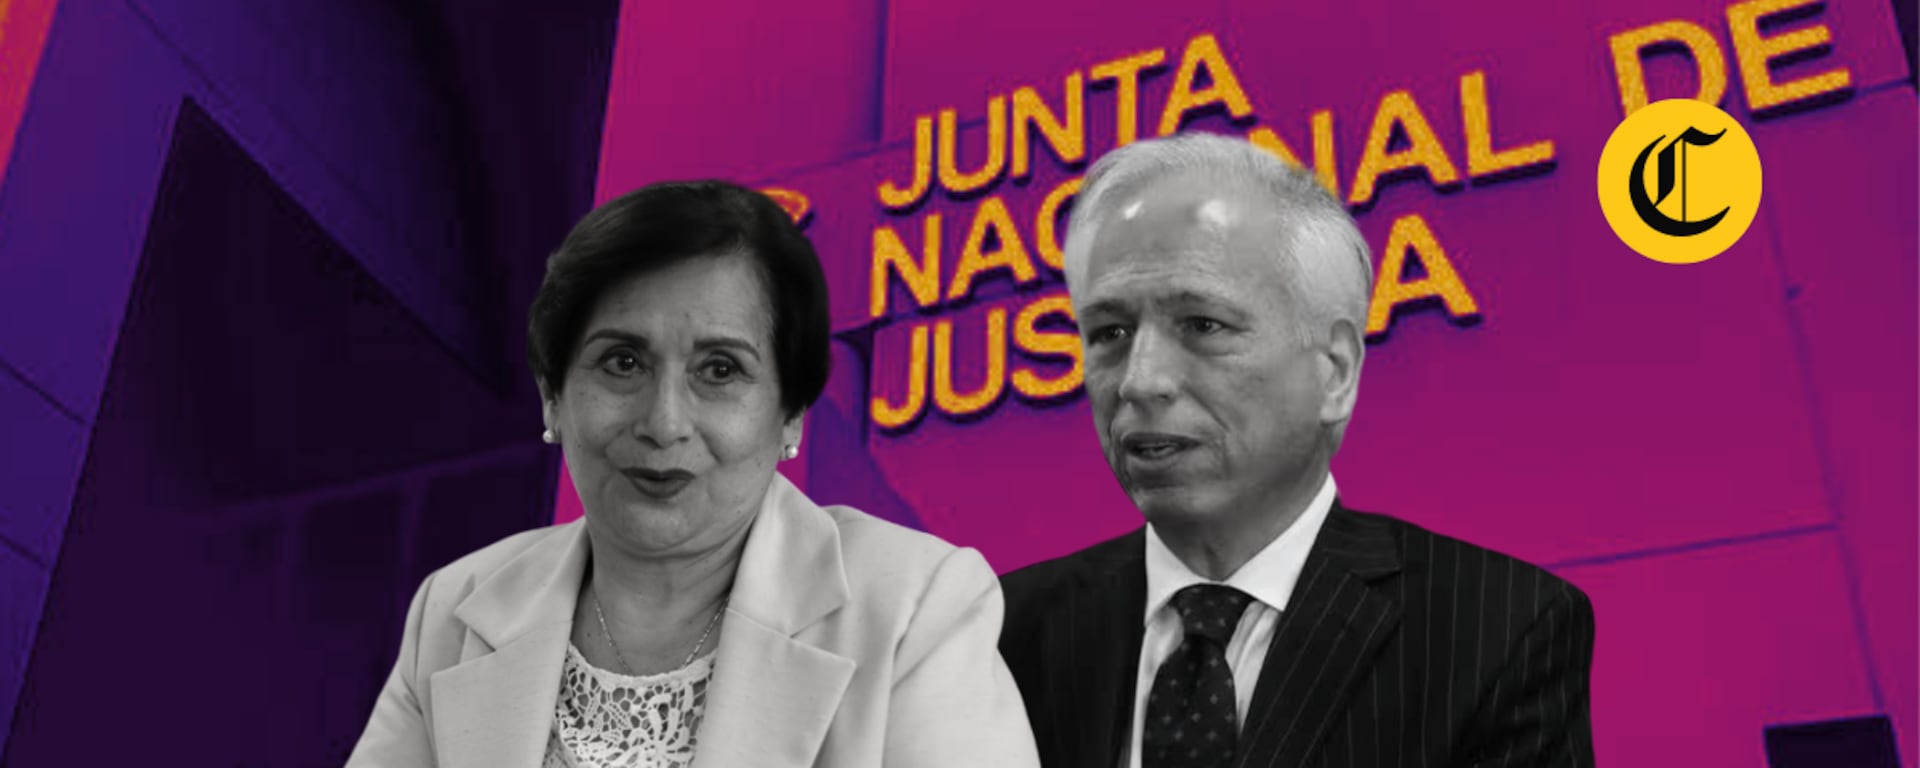 Aldo Vásquez e Inés Tello fueron reincorporados a JNJ, mientras Congreso apeló resolución